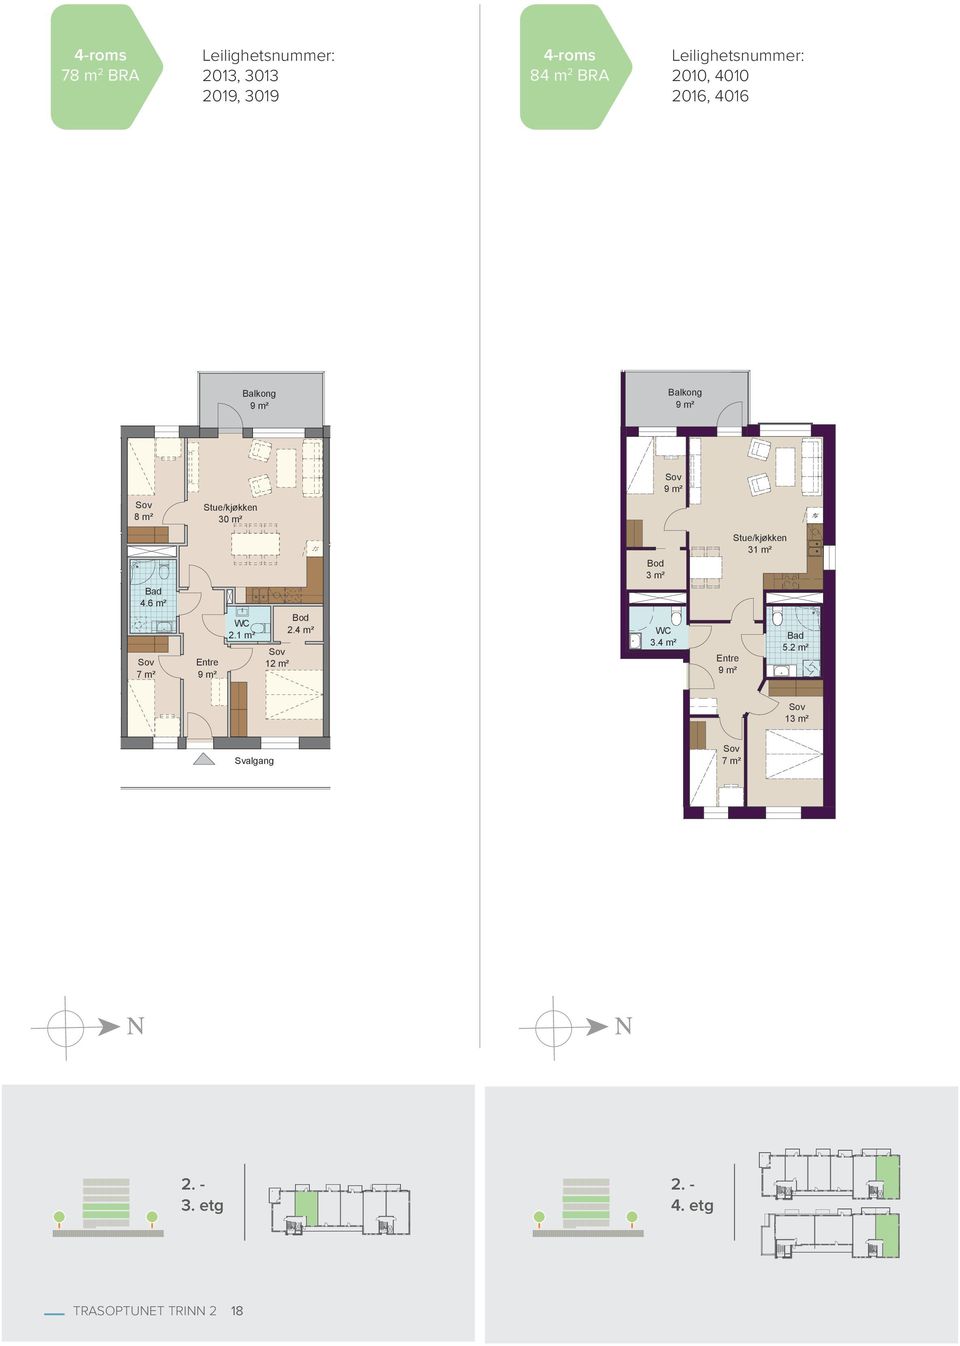 6 m² Stue/kjøkken 30 m² WC 2.1 m² Entre 12 m² 7 m² Bod 2.4 m² Bod 3 m² WC 3.